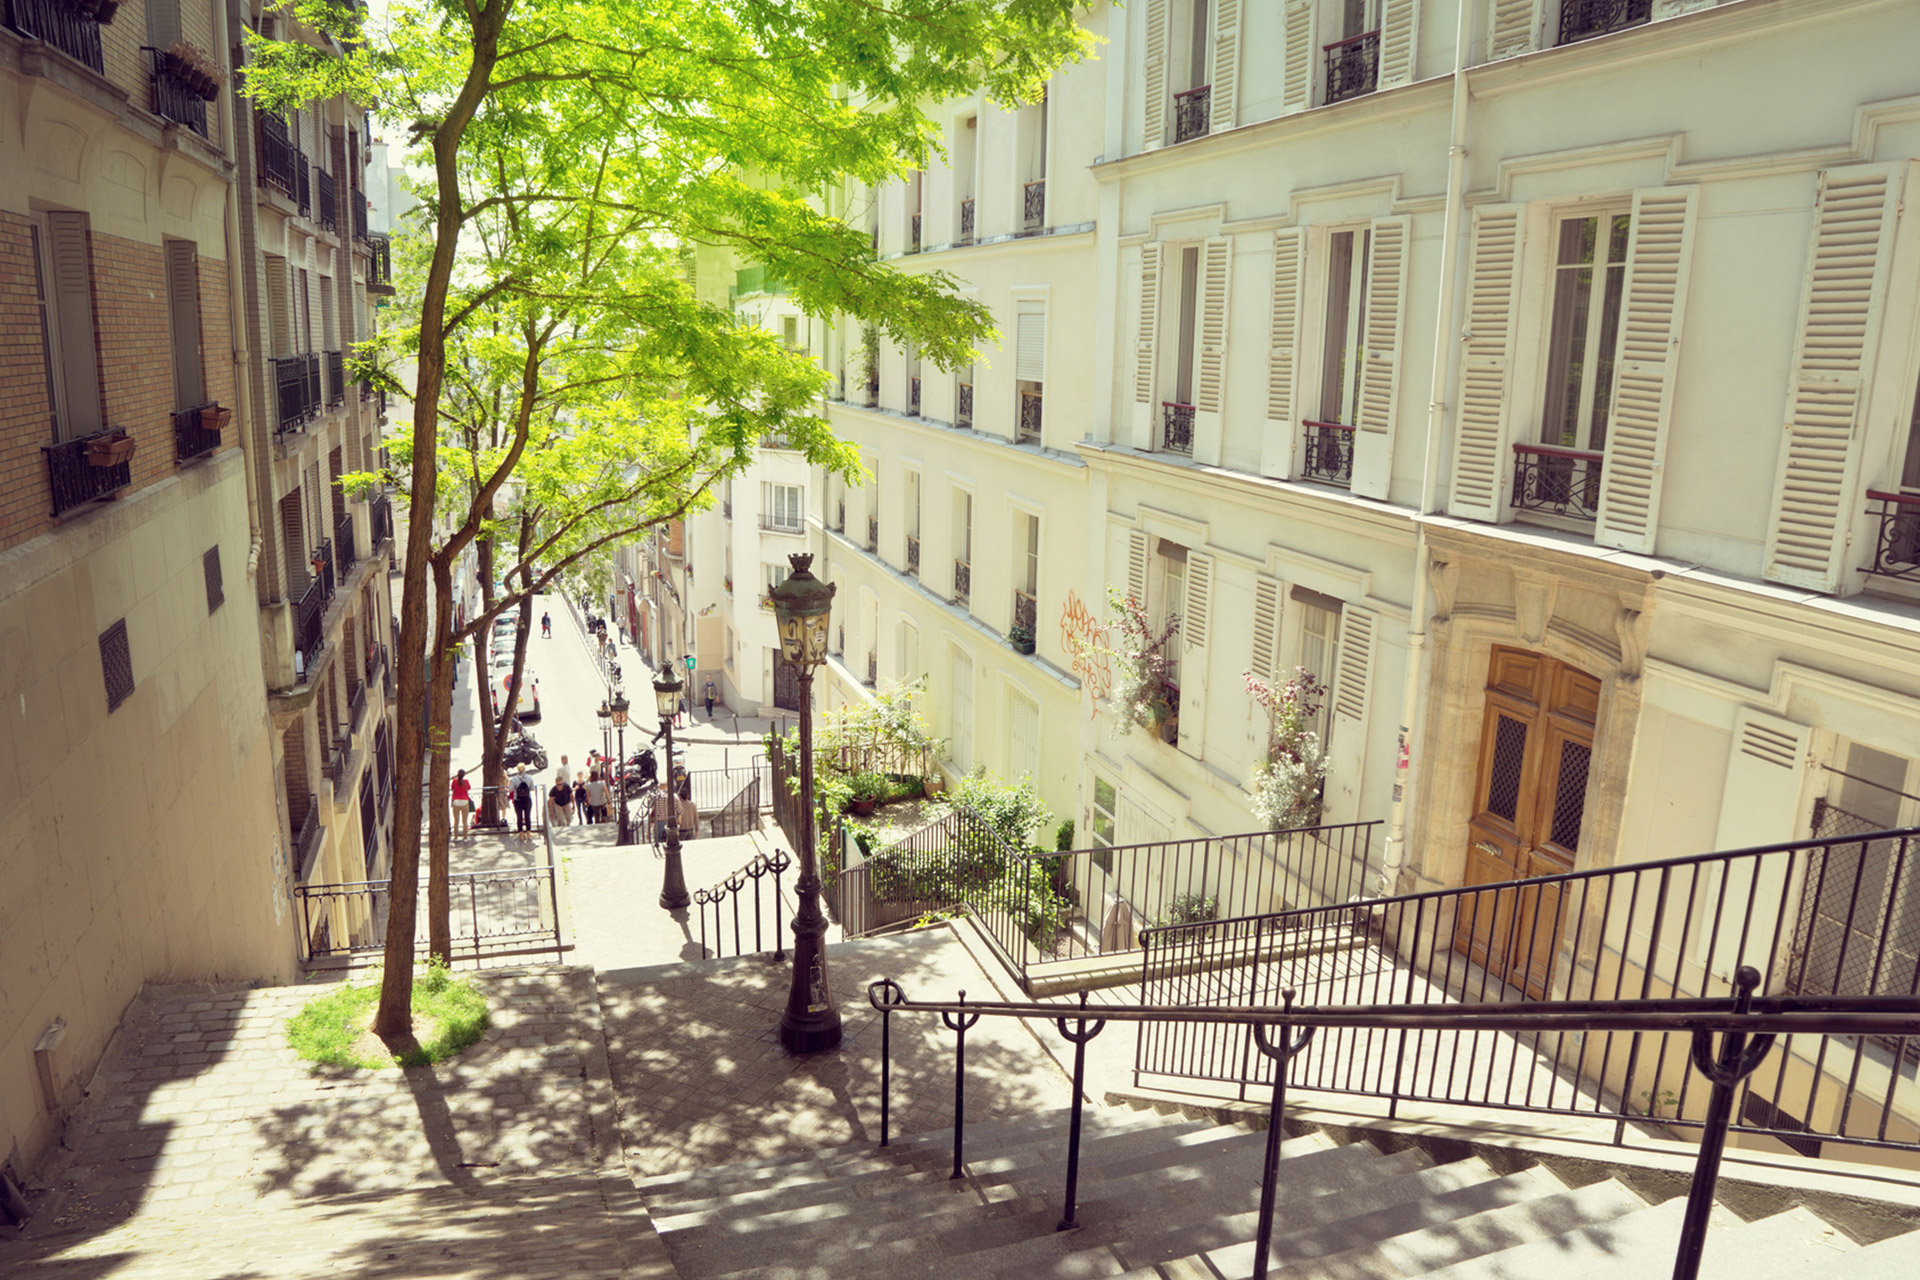 Montmartre Walking Tour - Paris Perfect